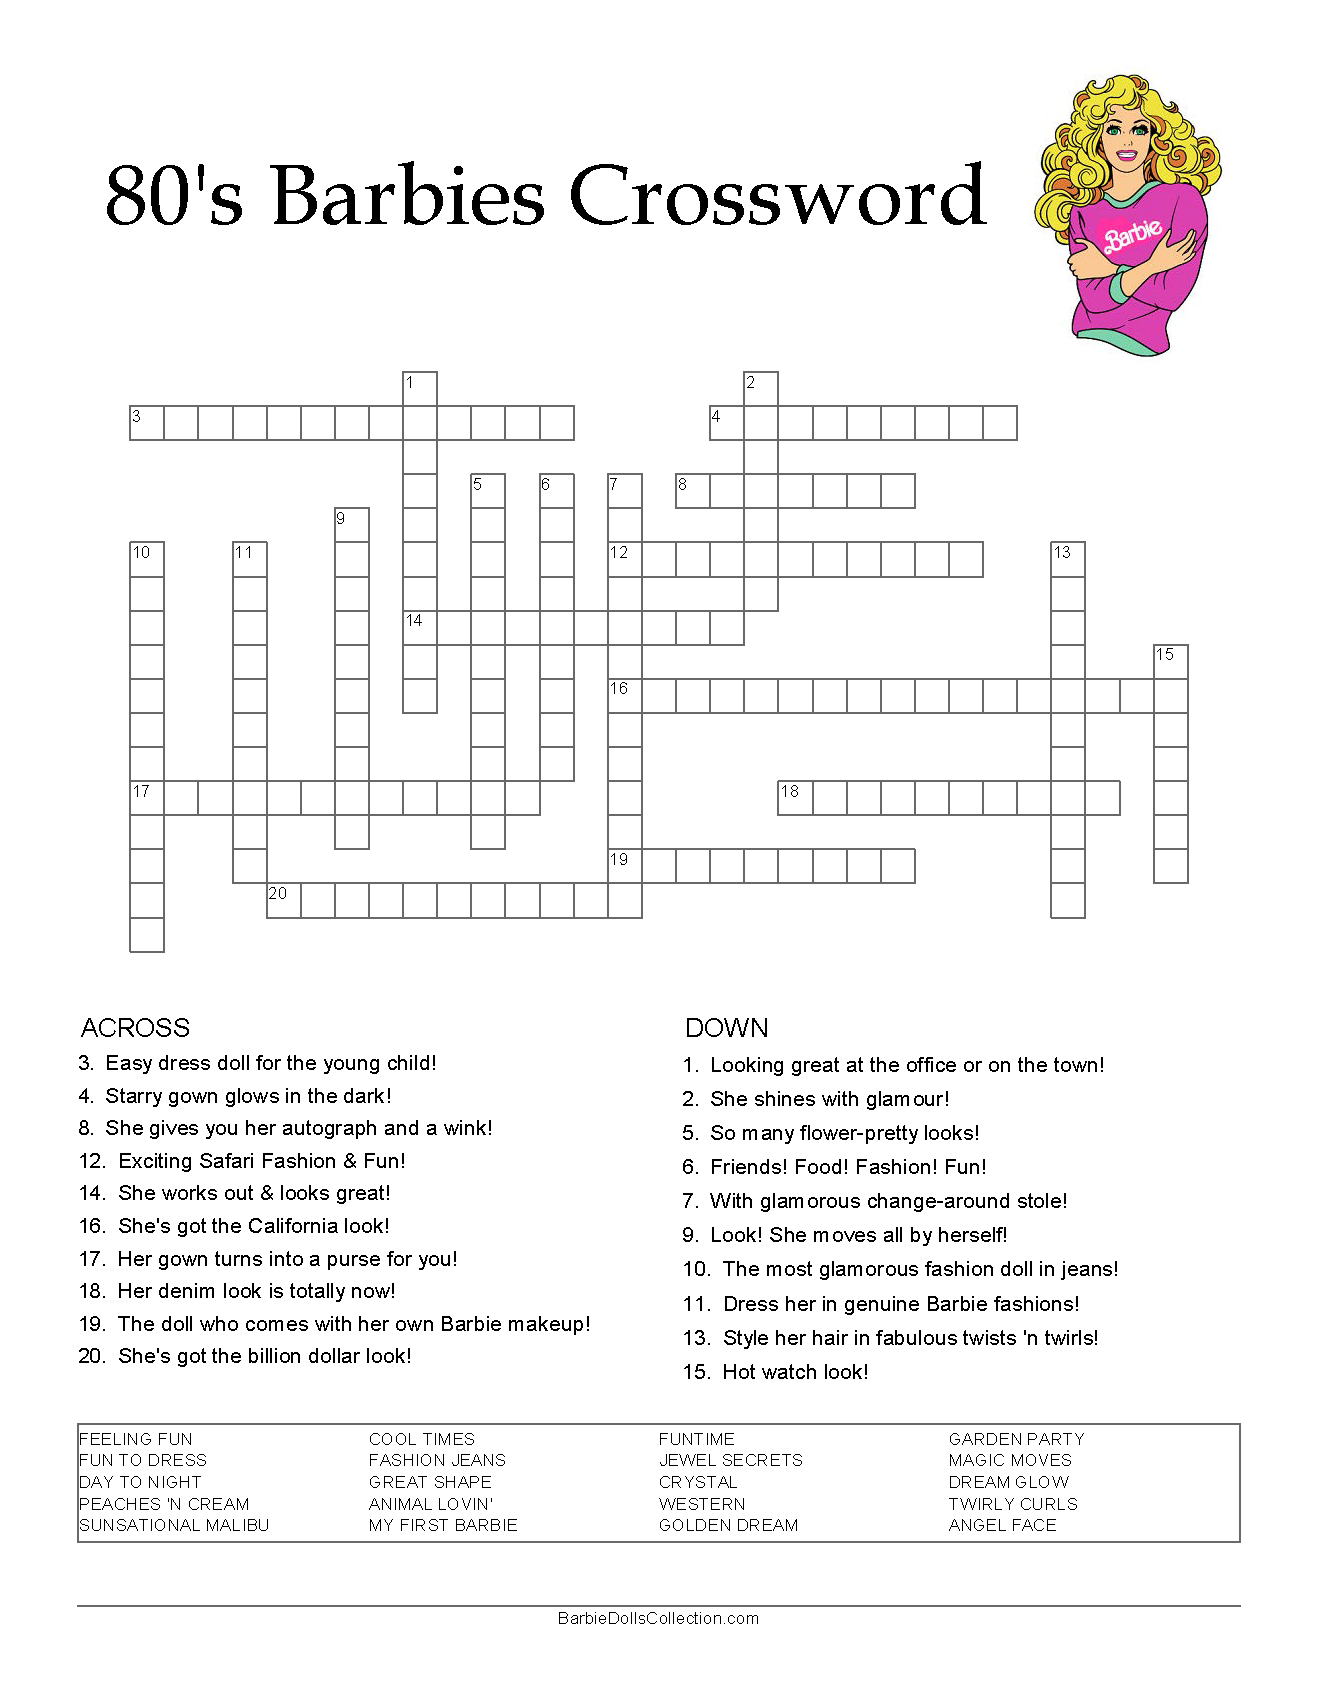 80’s Barbies Crossword